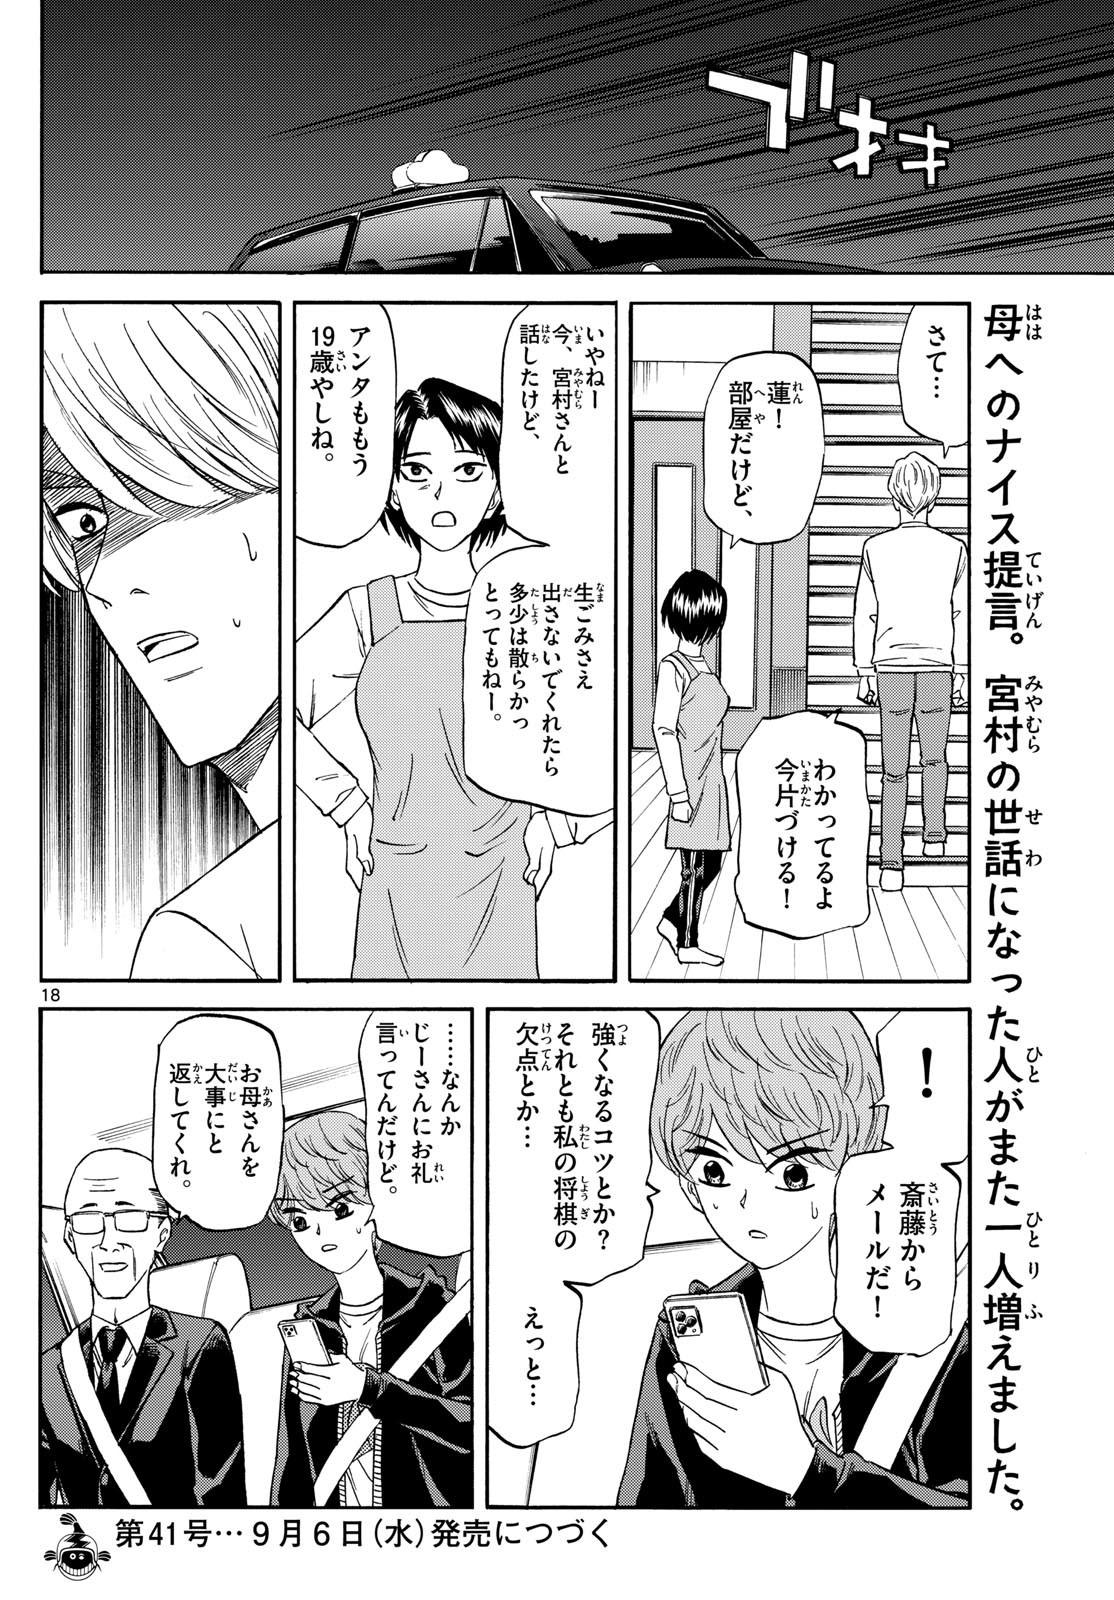 Ryu-to-Ichigo - Chapter 157 - Page 18